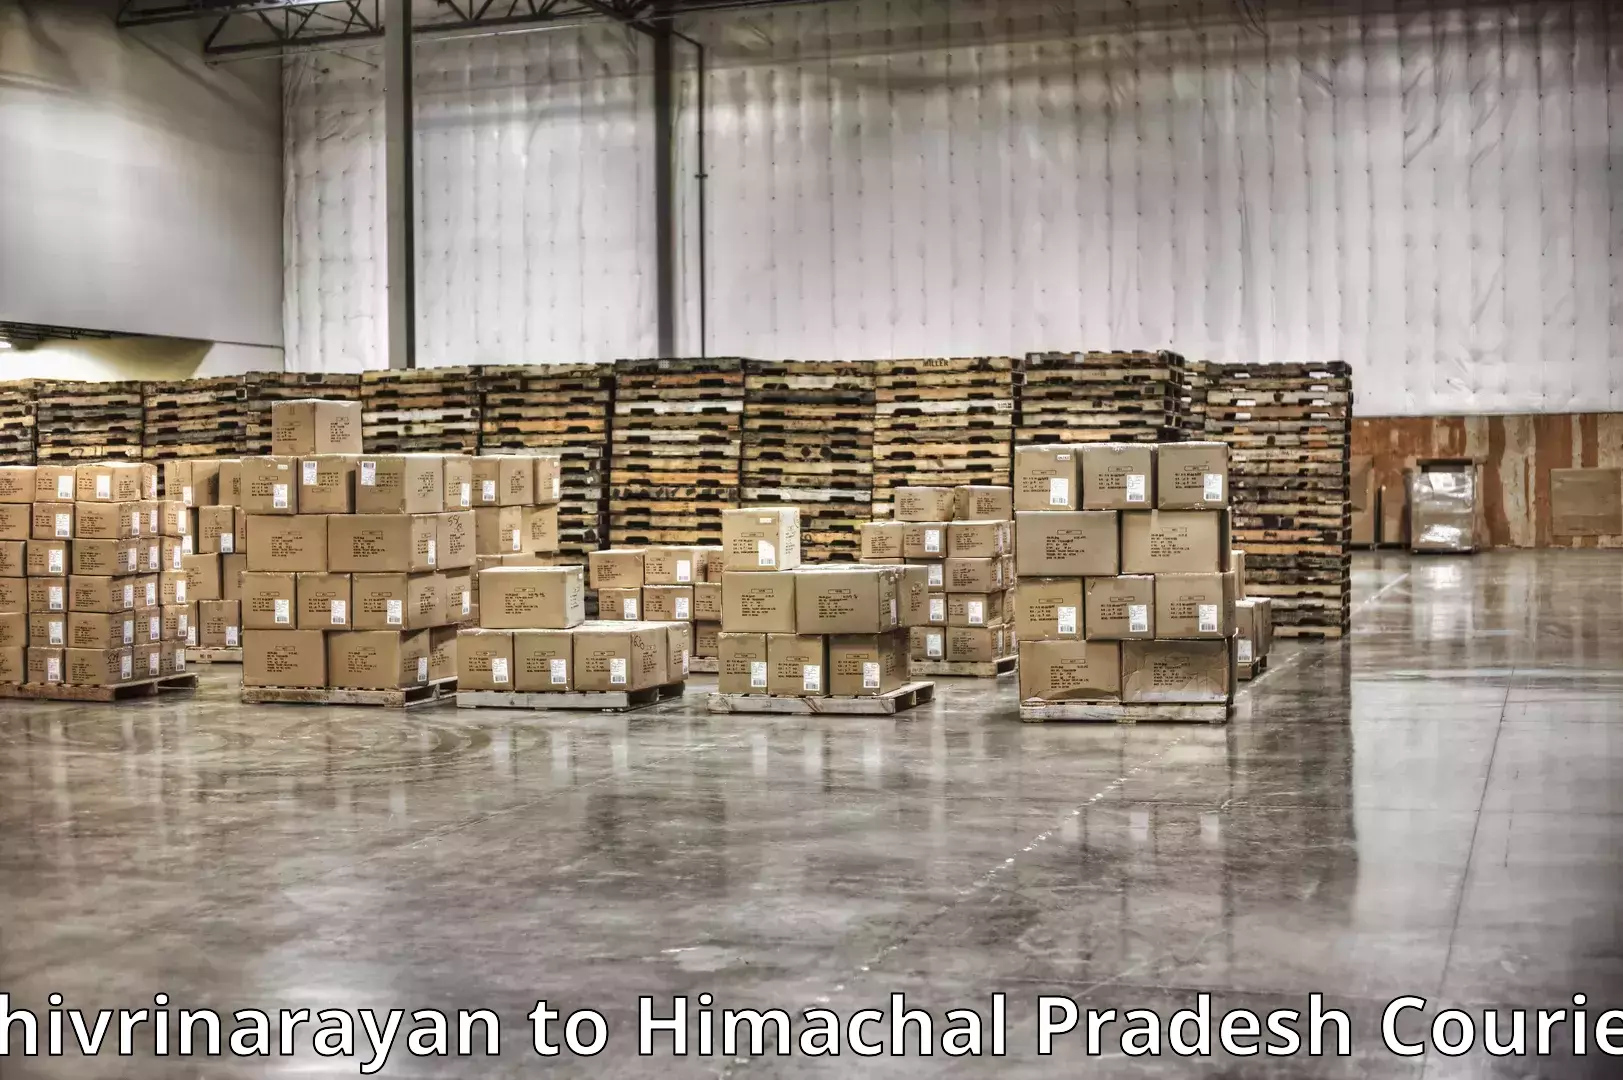 Moving and packing experts Shivrinarayan to Raipur Sahoran